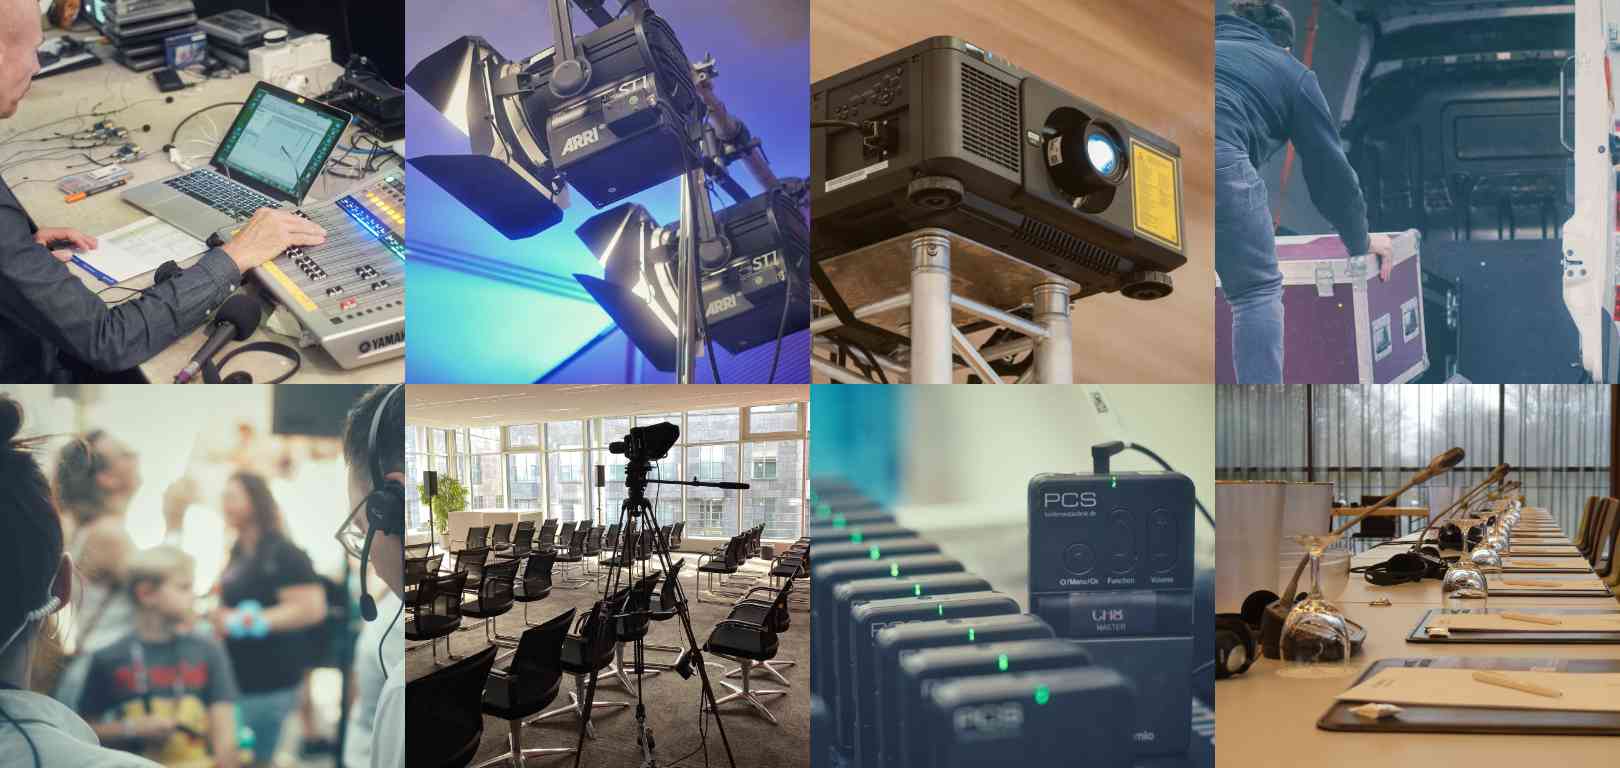 Bilder unterschiedlicher Veranstaltungstechnik wie Projektor, Mikrofone, Mischpult, Kamera und mehr. Zum Thema Veranstaltungstechnik mieten.